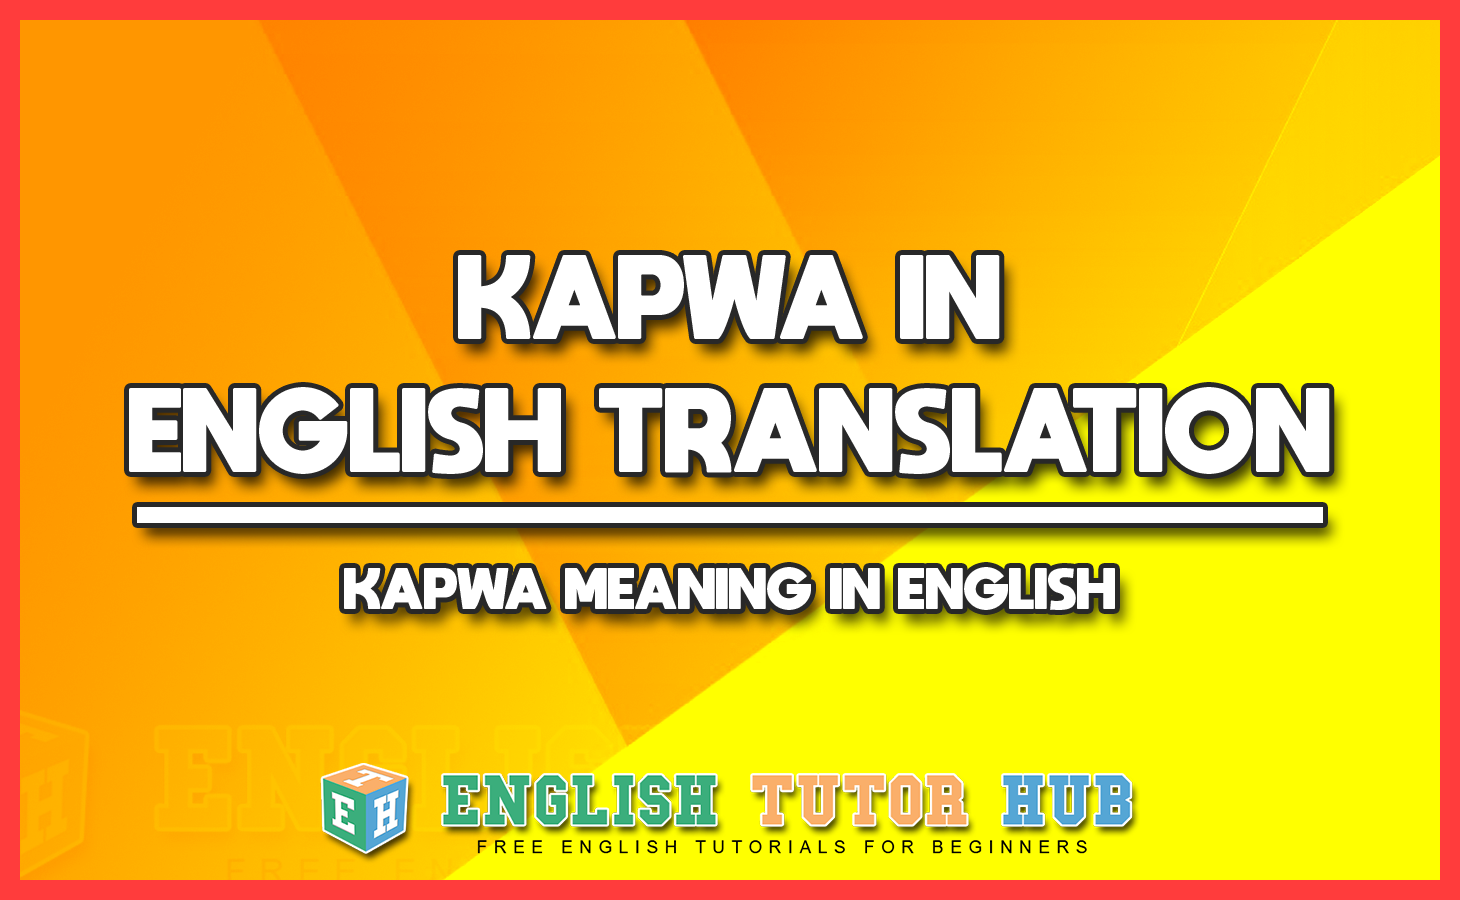 KAPWA IN ENGLISH TRANSLATION - KAPWA MEANING IN ENGLISH